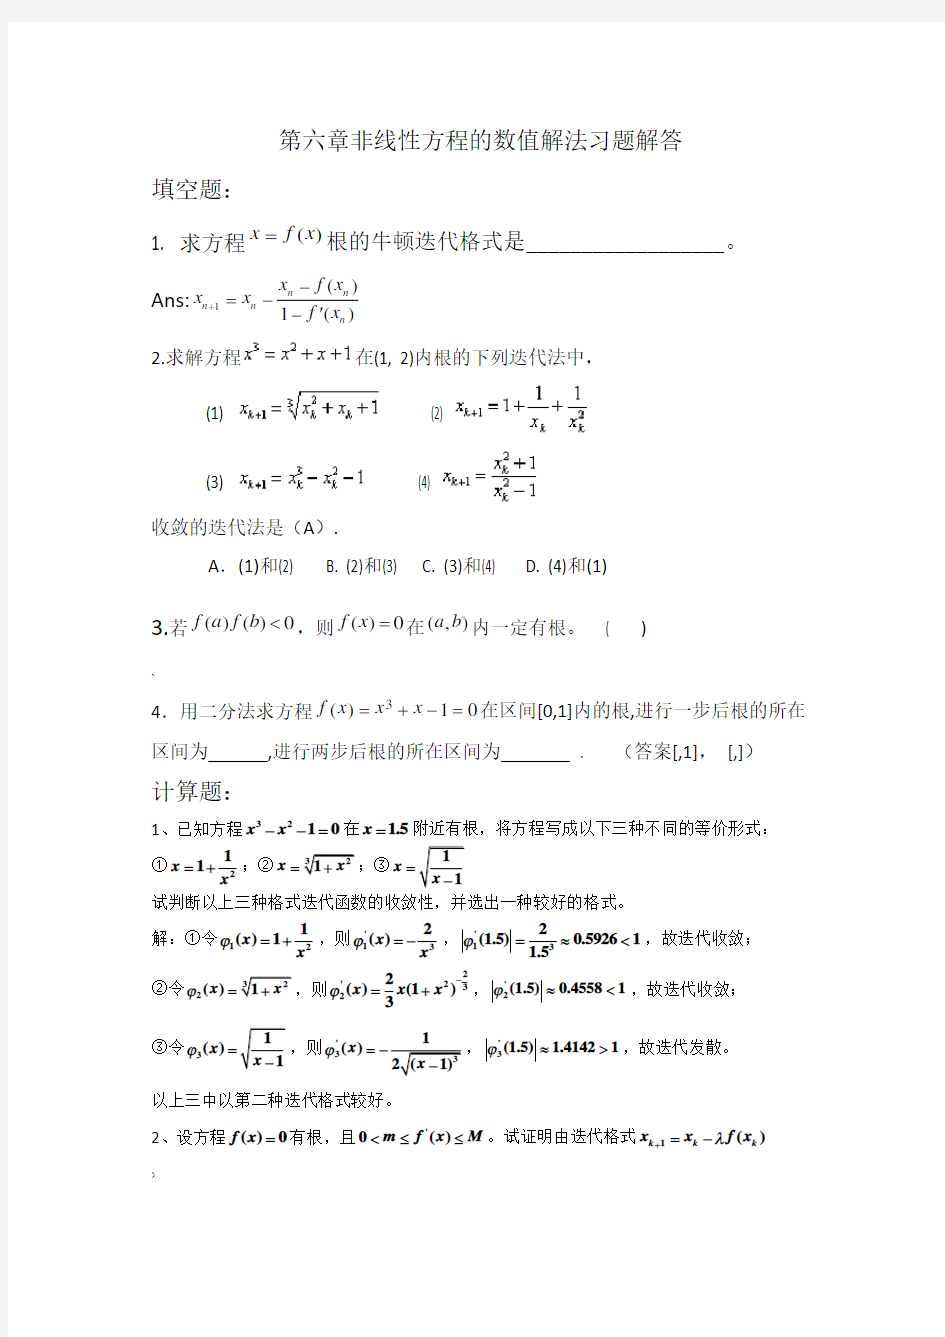 第六章非线性方程的数值解法习题解答